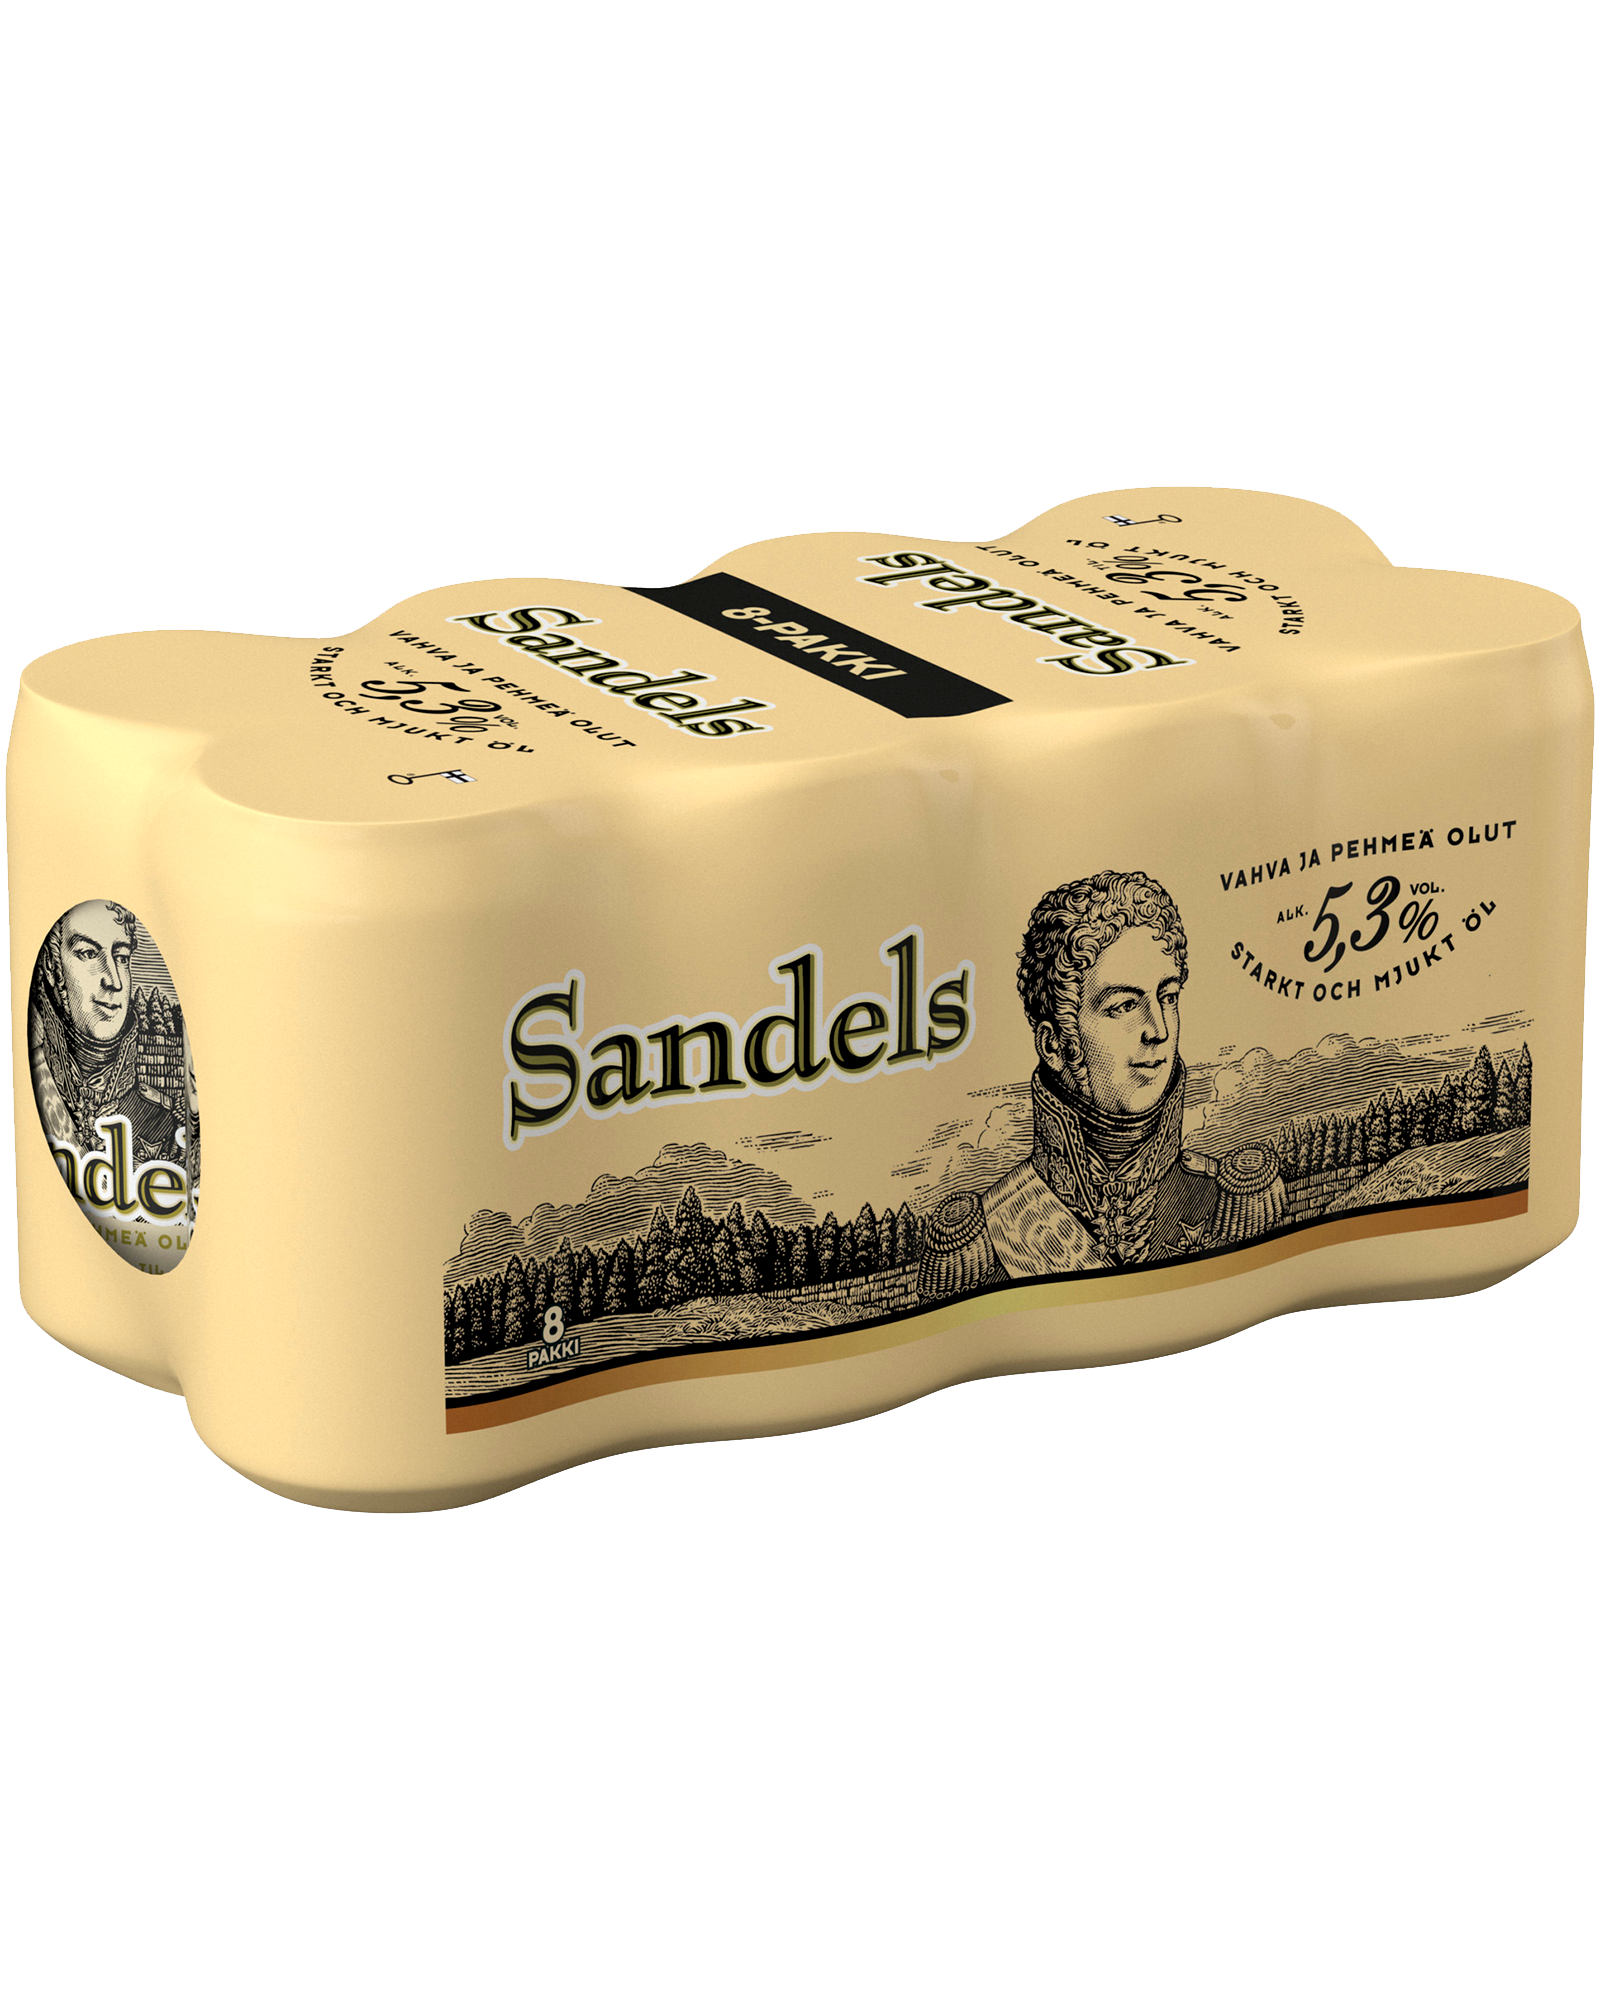 Olvi Sandels A 8-pack can